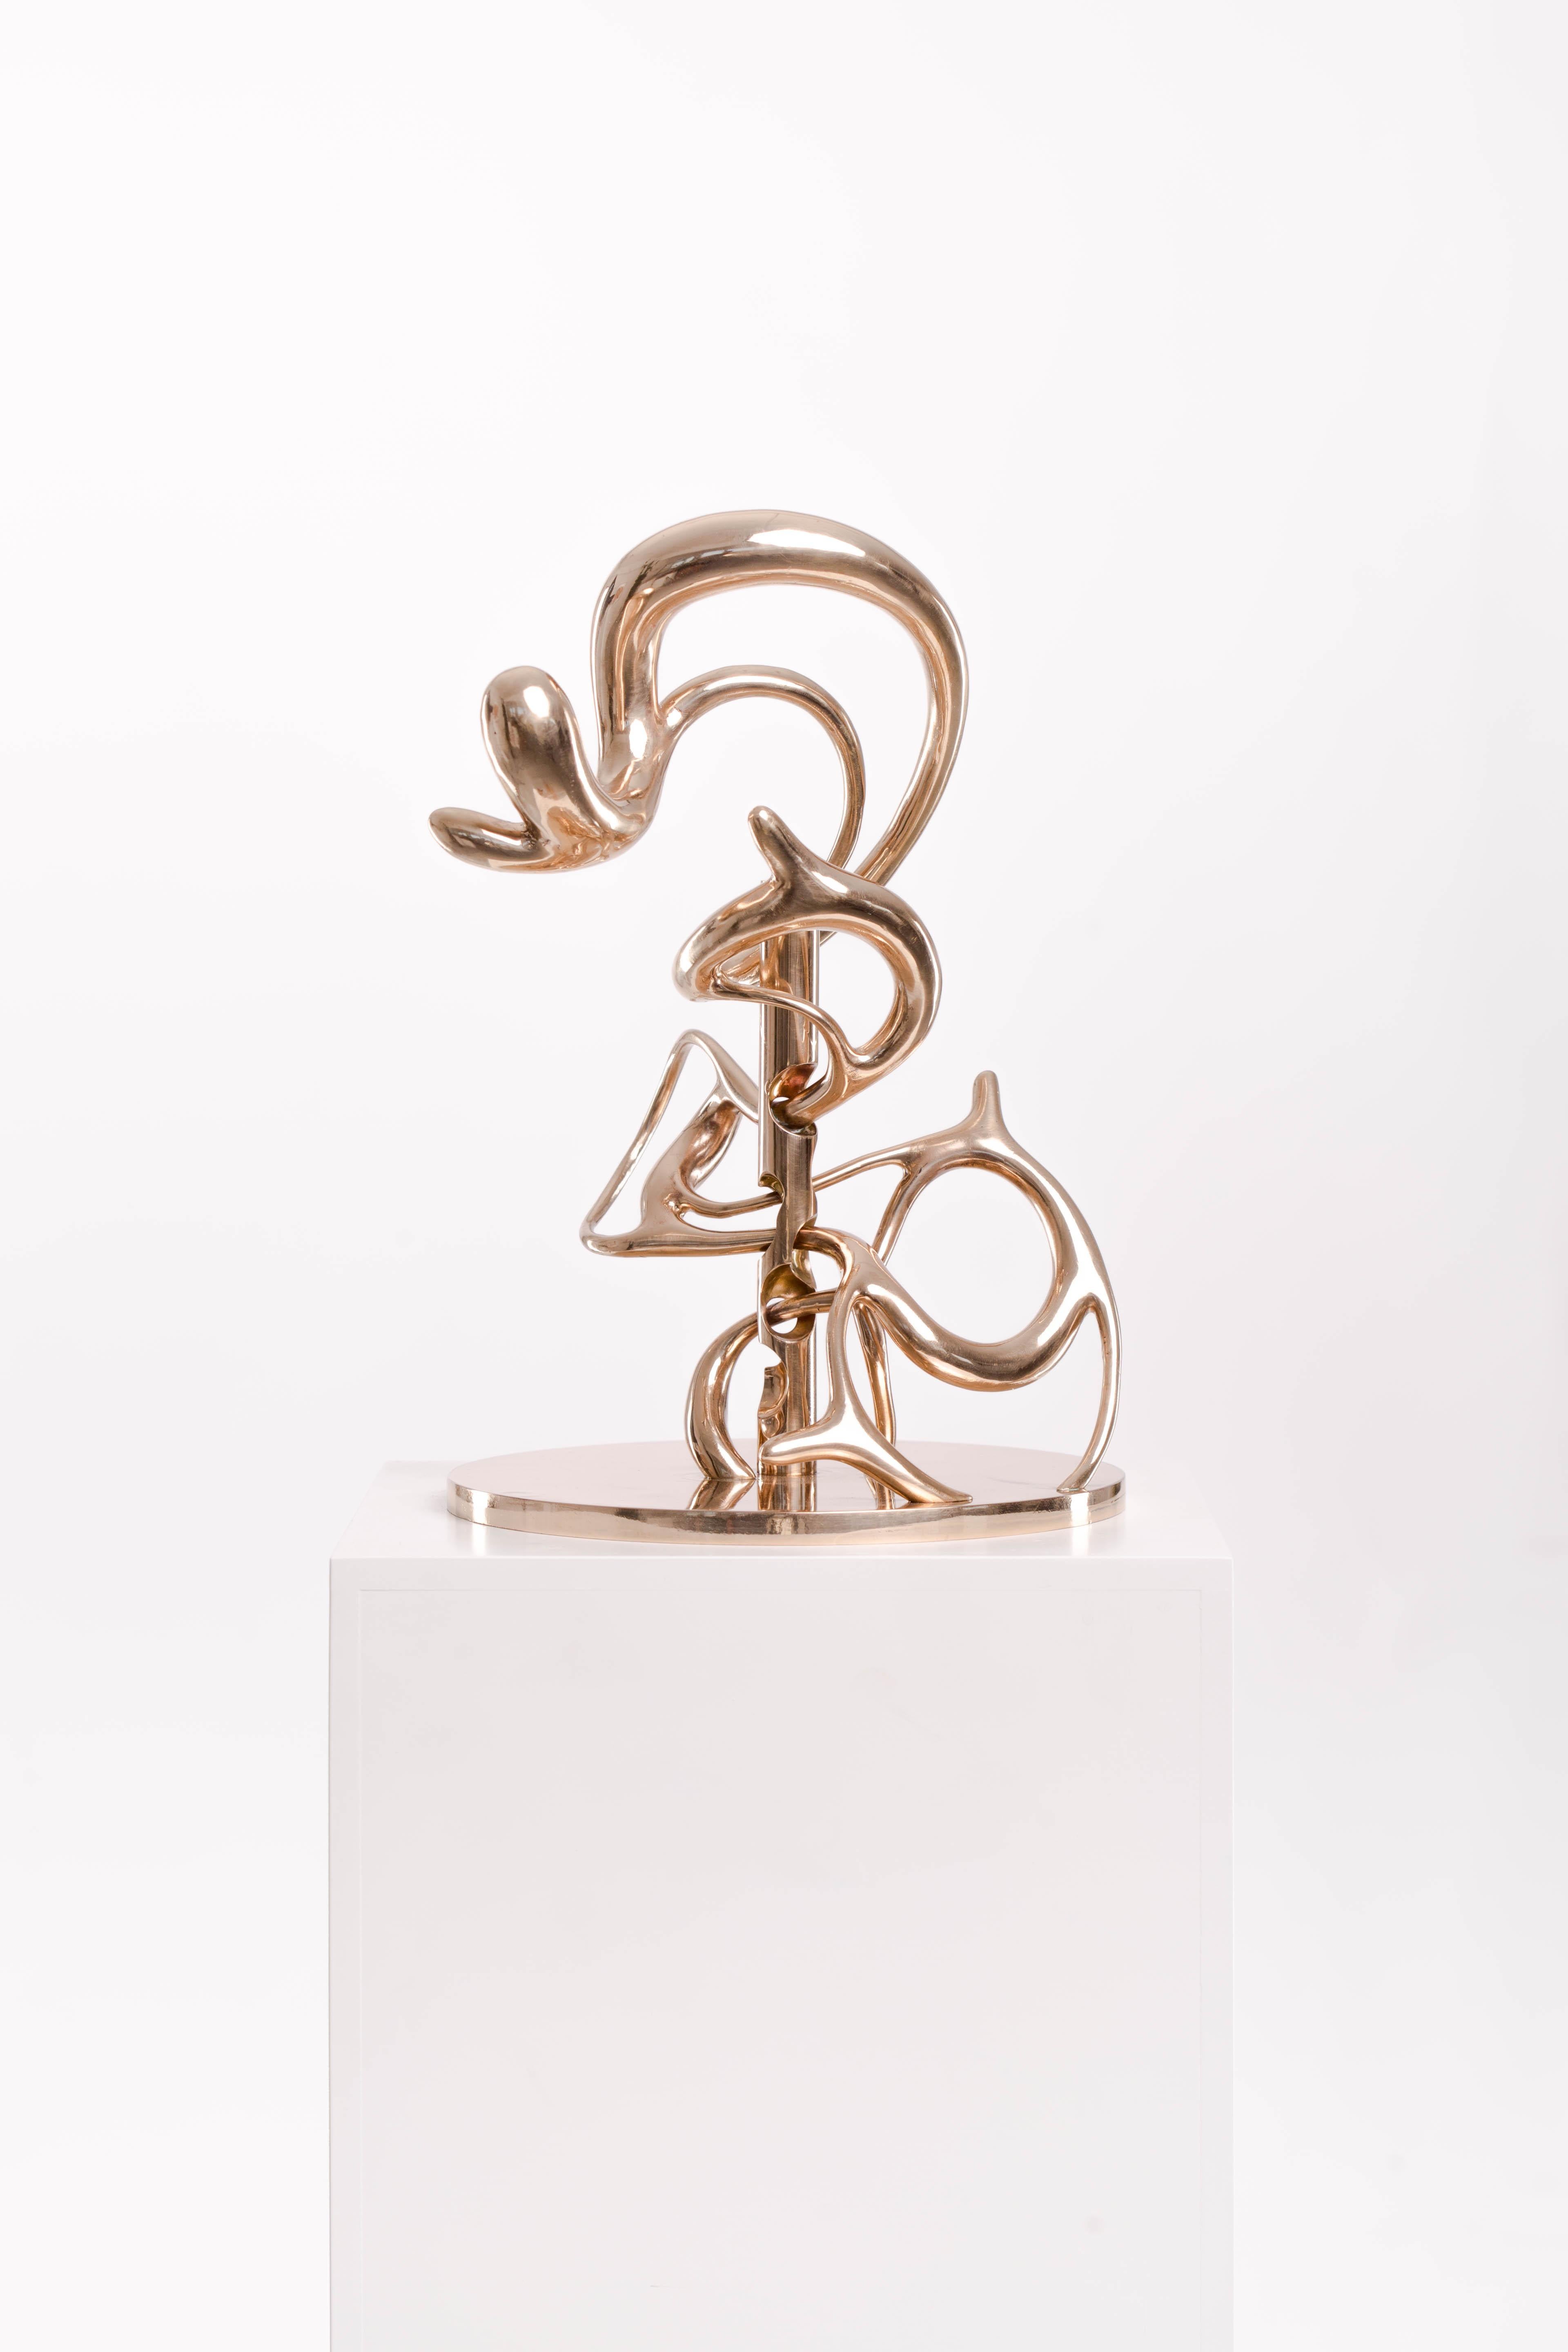 Bronze, Polish, Abstract, Sculpture, Art, Contemporary, Modern, Patina, Complex 3